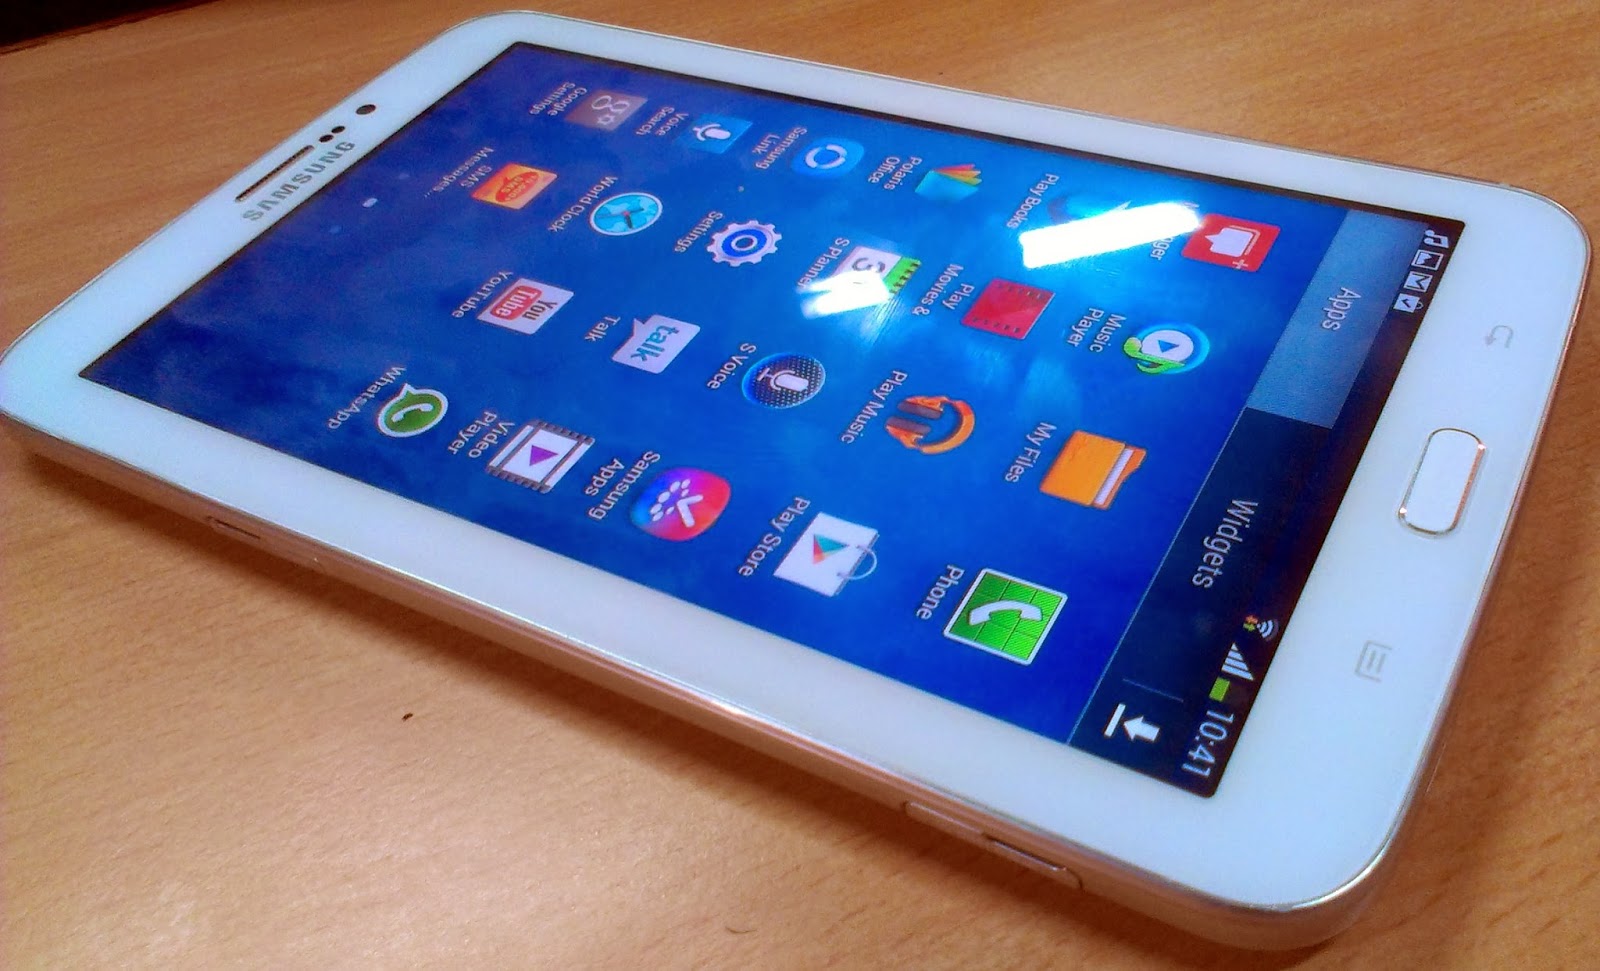 Bán Samsung Tap 3 T211 màn hình 7 in, lắp sim nghe gọi như điện thoại Samsung+Galaxy+Tab+3+review+hands+on+android+jellybean++%25281%2529